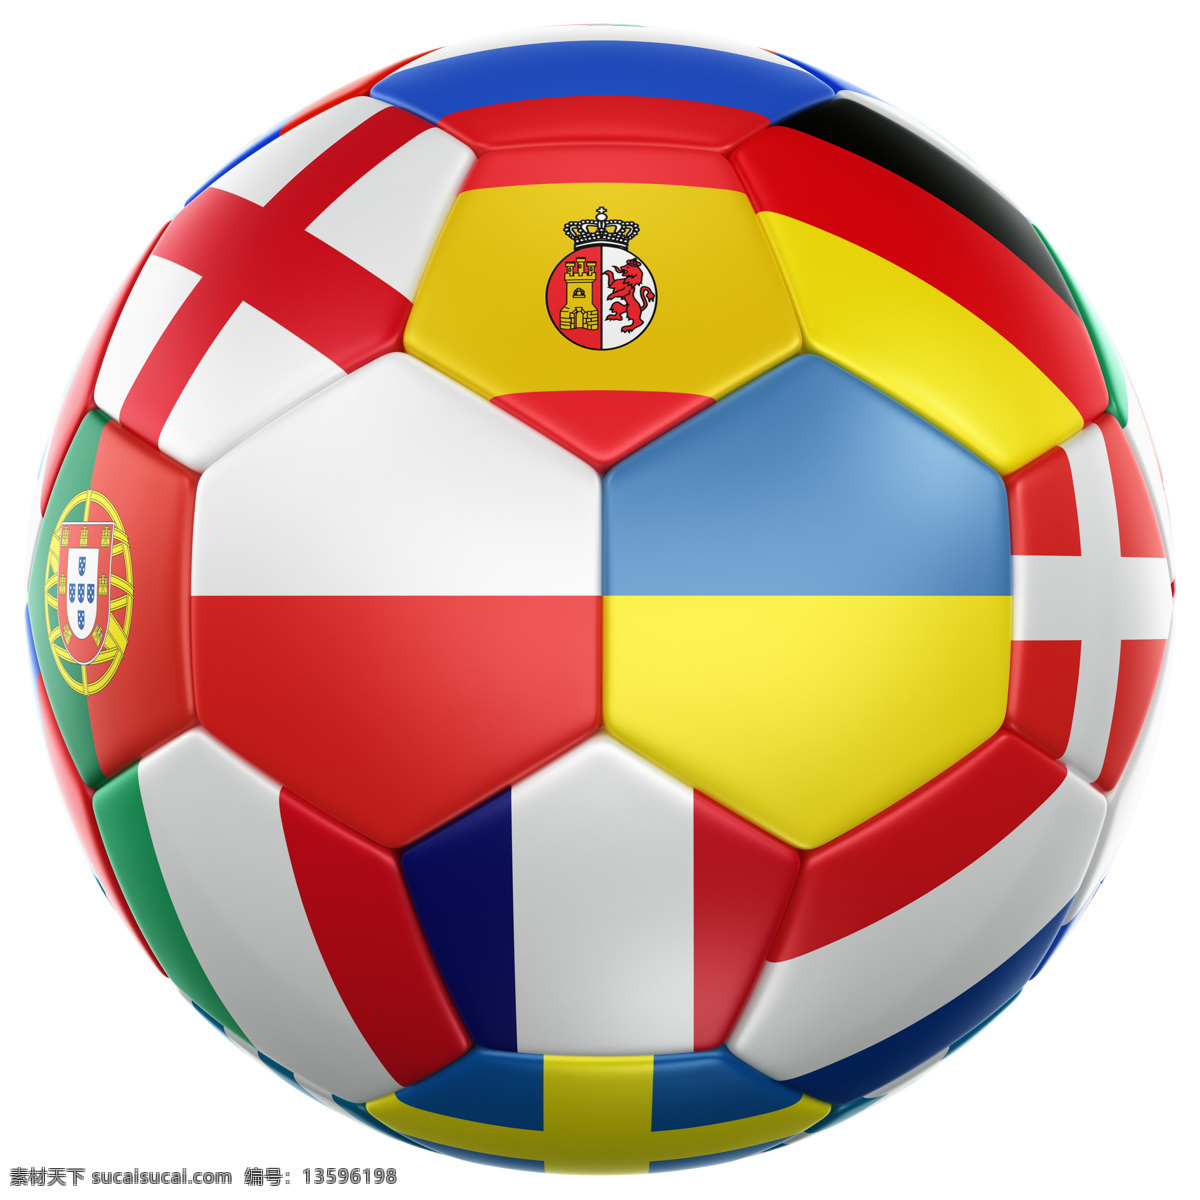 足球 上 国旗 国旗素材 足球上的国旗 创意足球 彩色足球 欧洲 欧洲杯 足球摄影 足球素材 2012 摄影图库 国旗图片 生活百科